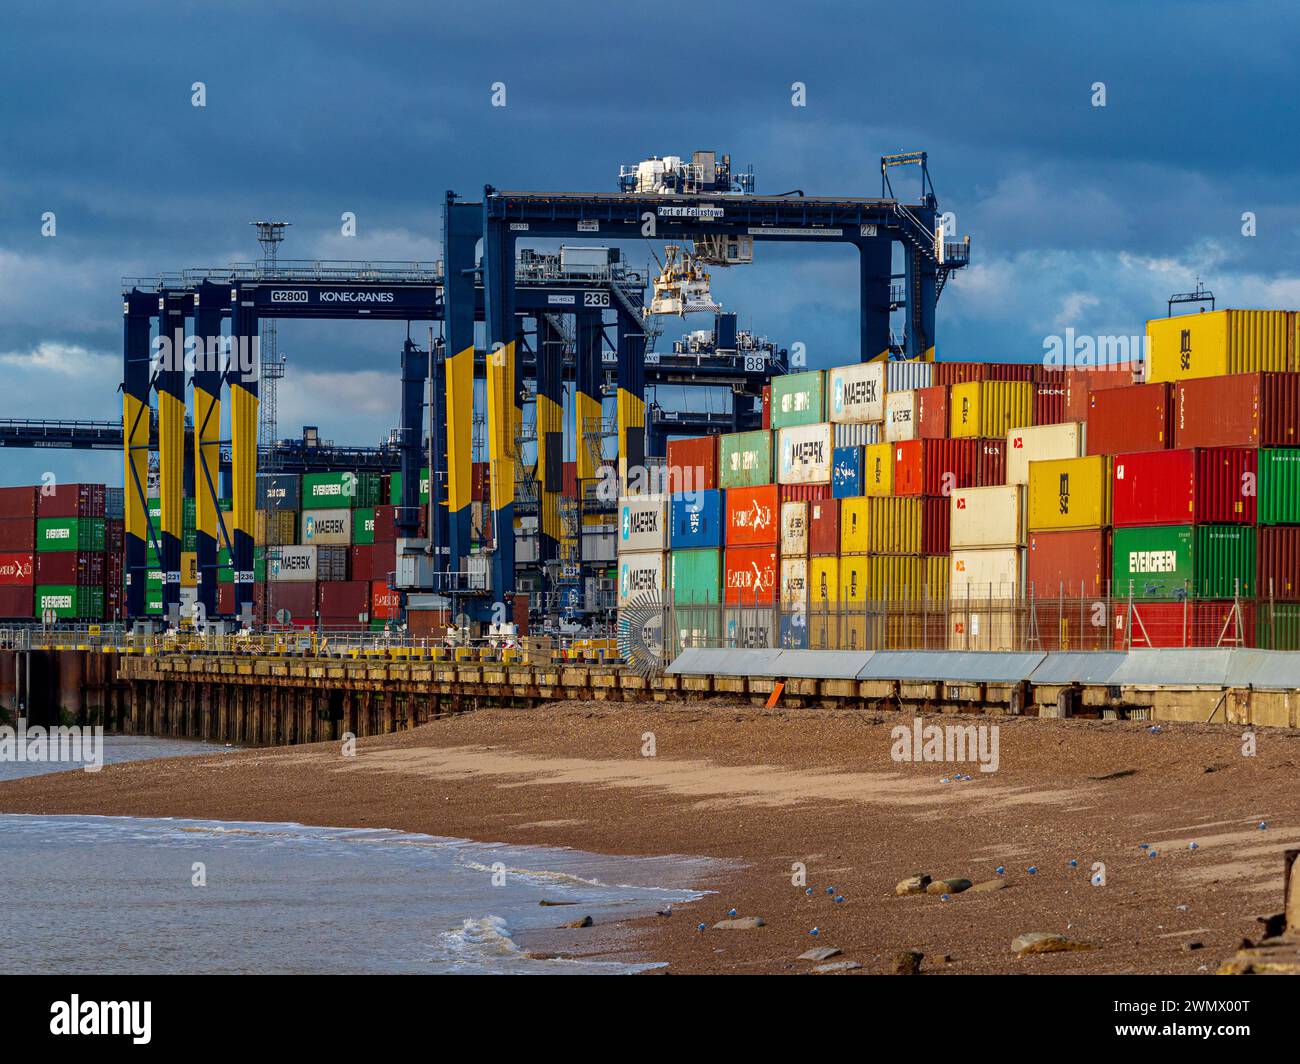 Versandcontainer gestapelt am Felixstowe Port, dem größten Containerhafen Großbritanniens. Ausfuhren aus dem Vereinigten Königreich. Einfuhren aus dem Vereinigten Königreich. Stockfoto